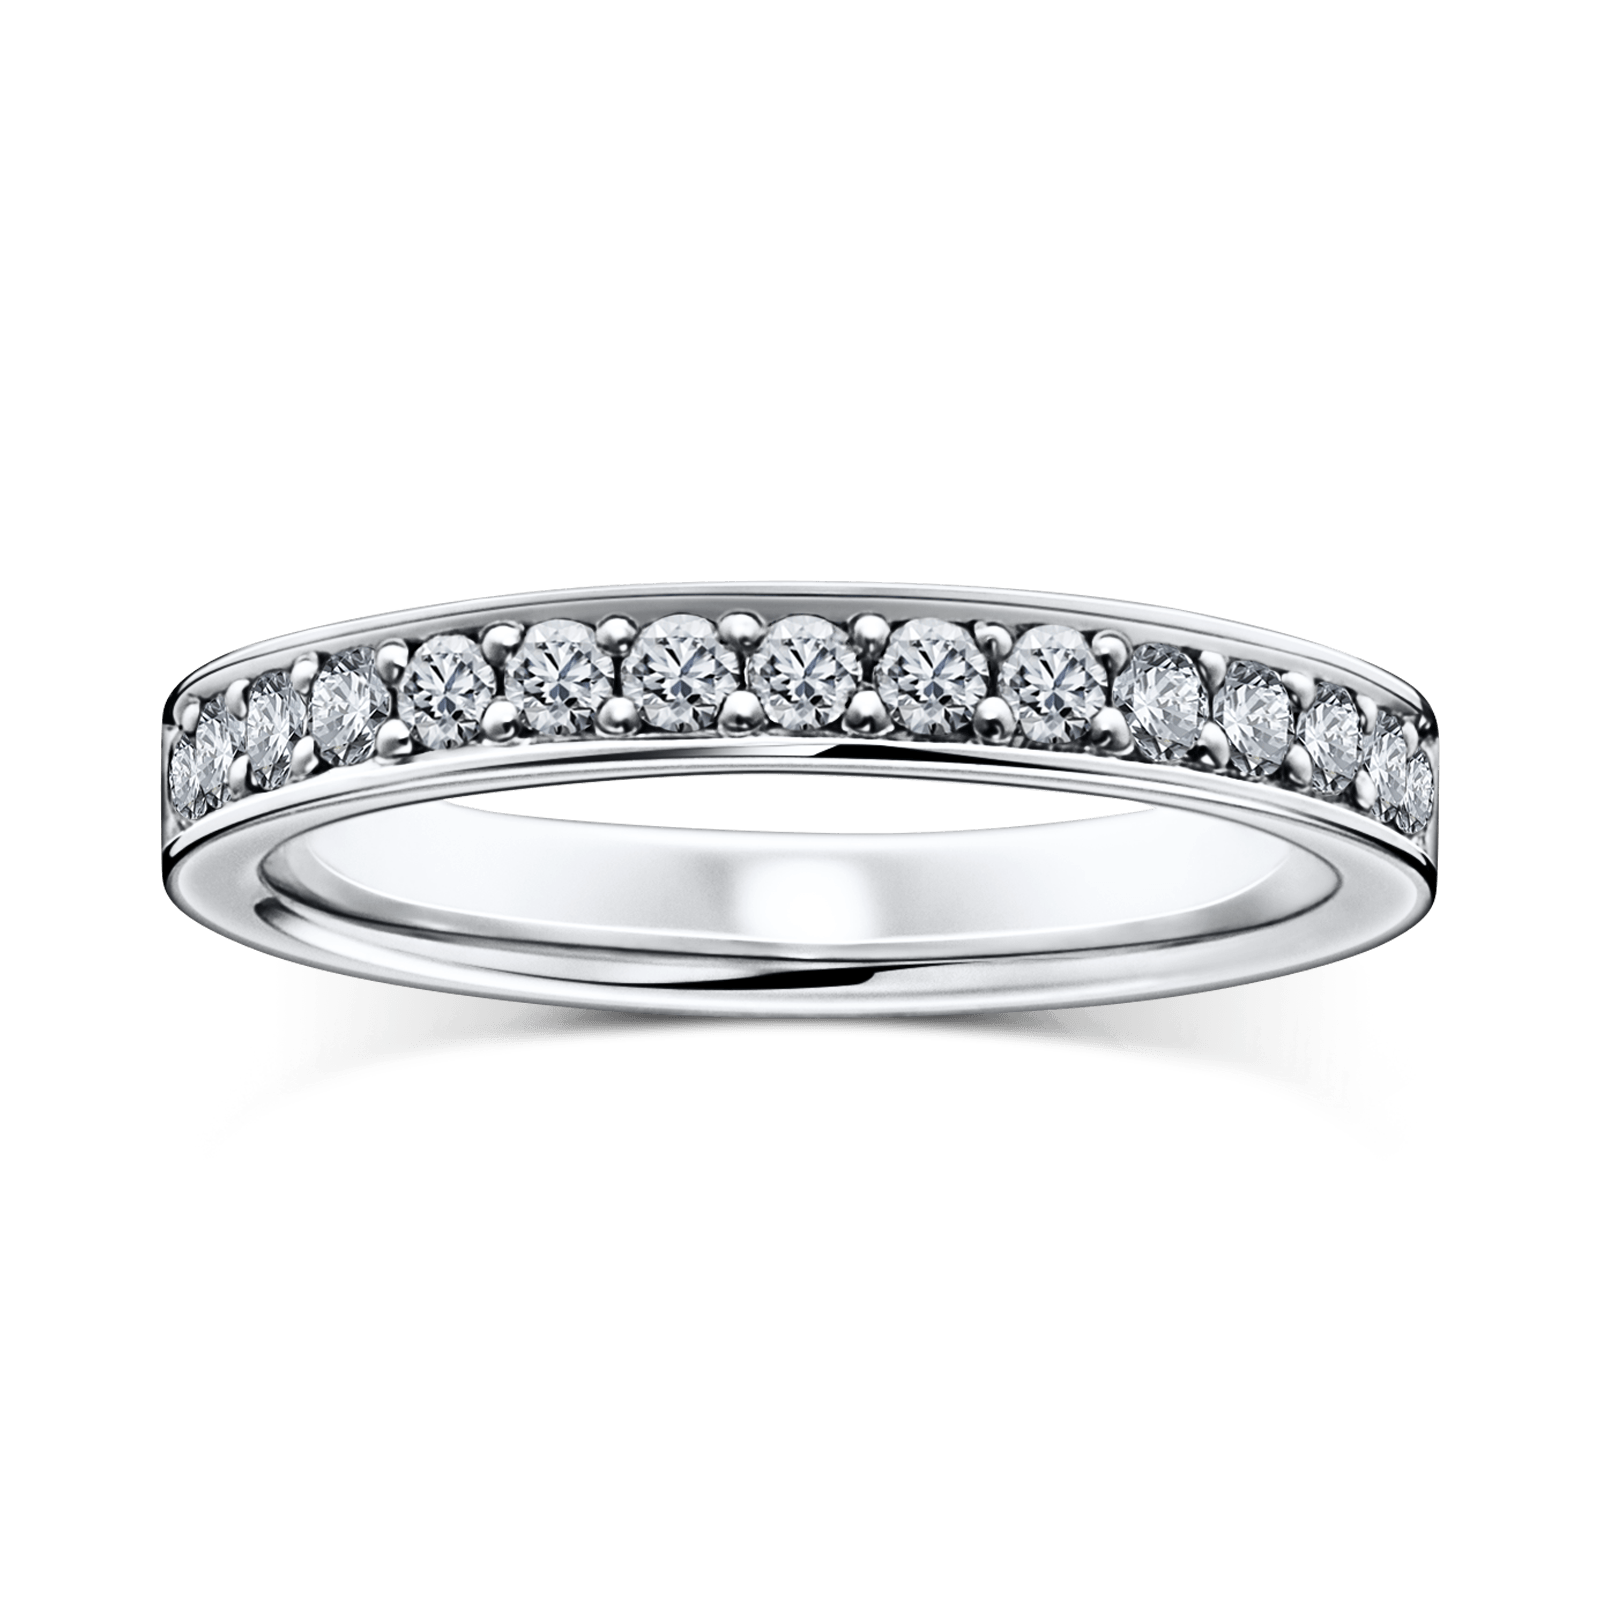 SOIREE Full|婚約指輪・結婚指輪ならラザール ダイヤモンド